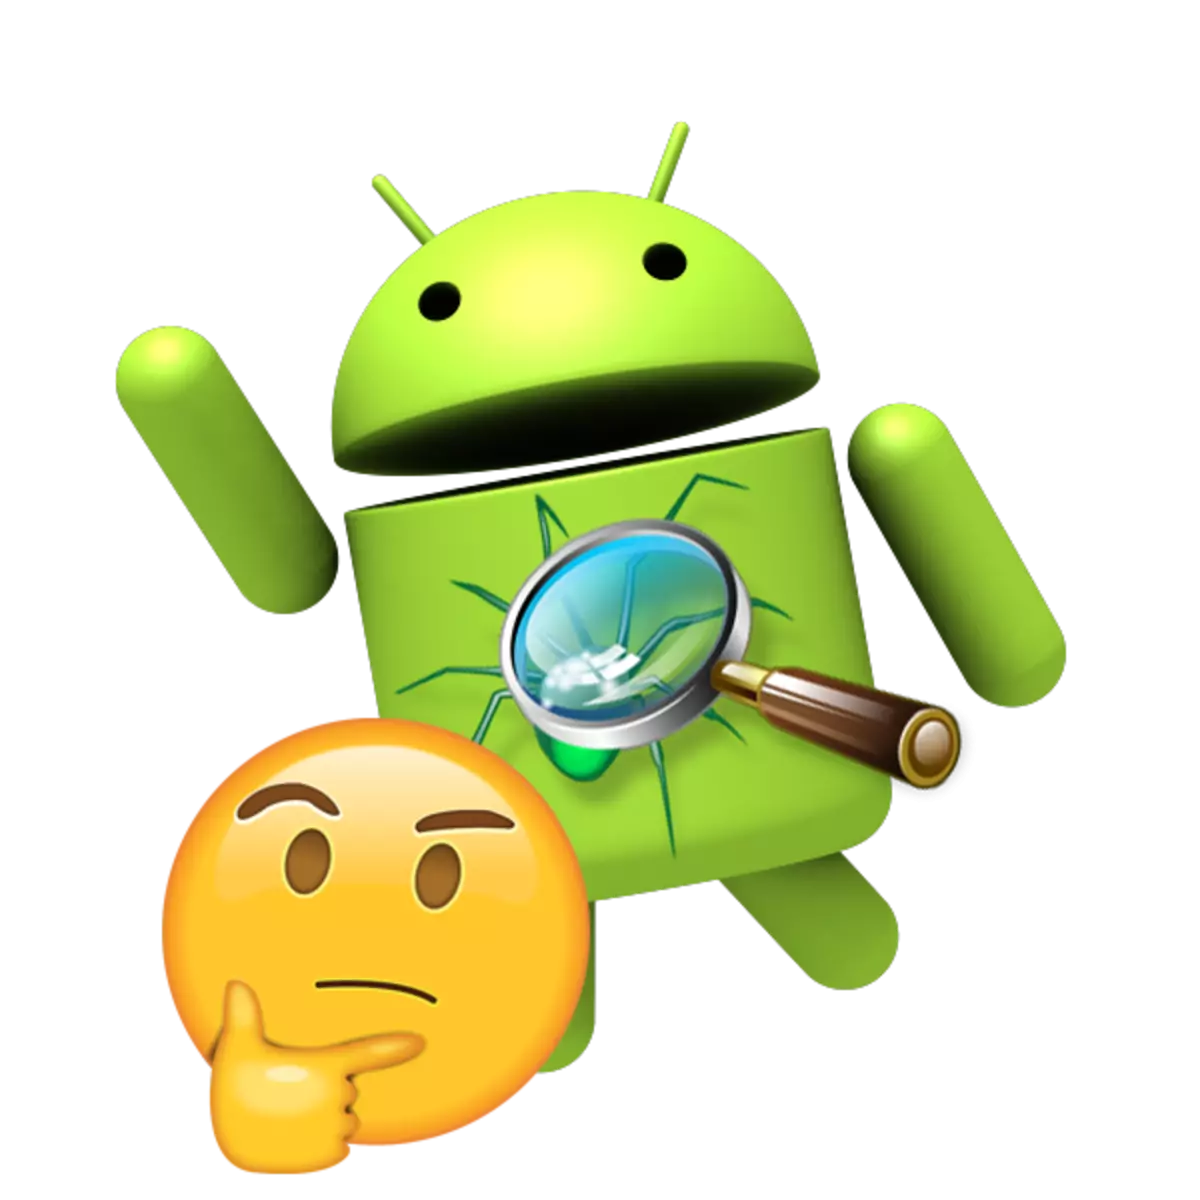 Hefur antivirus þörf fyrir Android smartphone